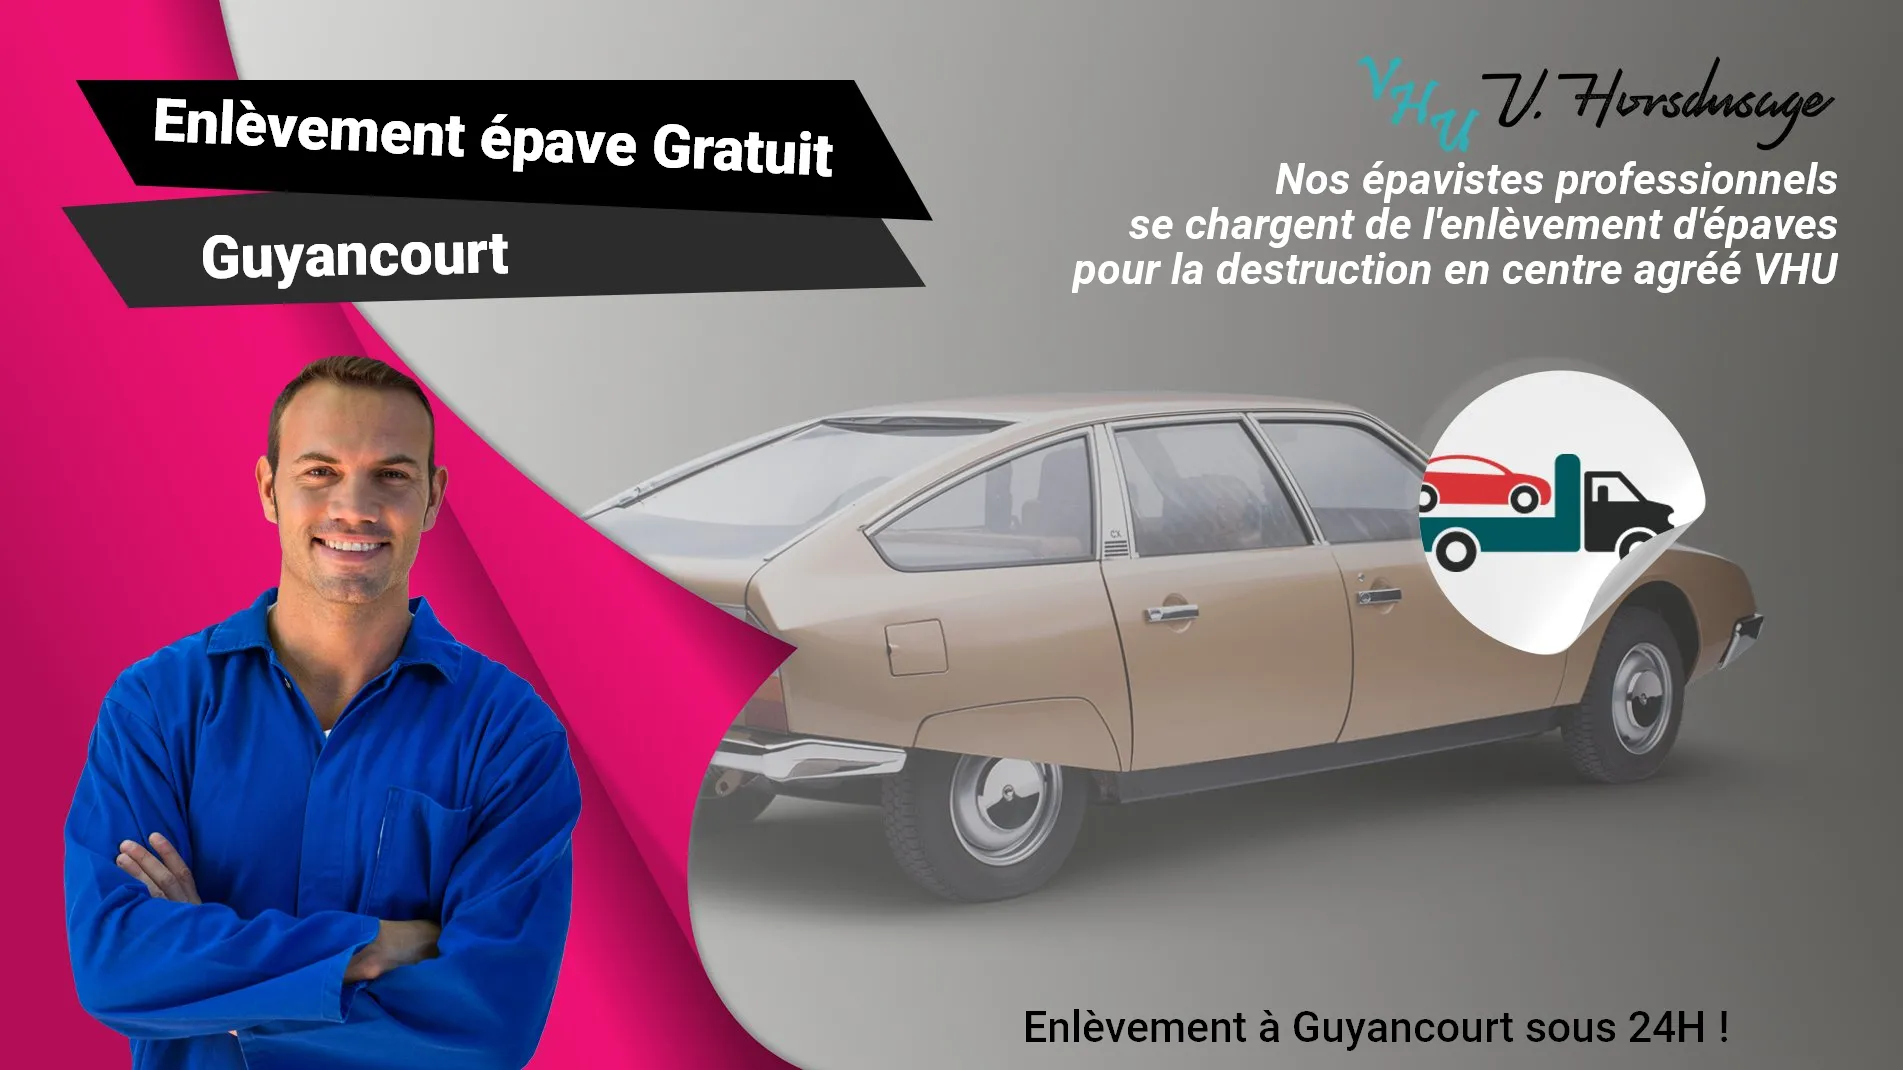 Pour un enlèvement gratuit à Guyancourt, contactez nos épavistes agréé VHU